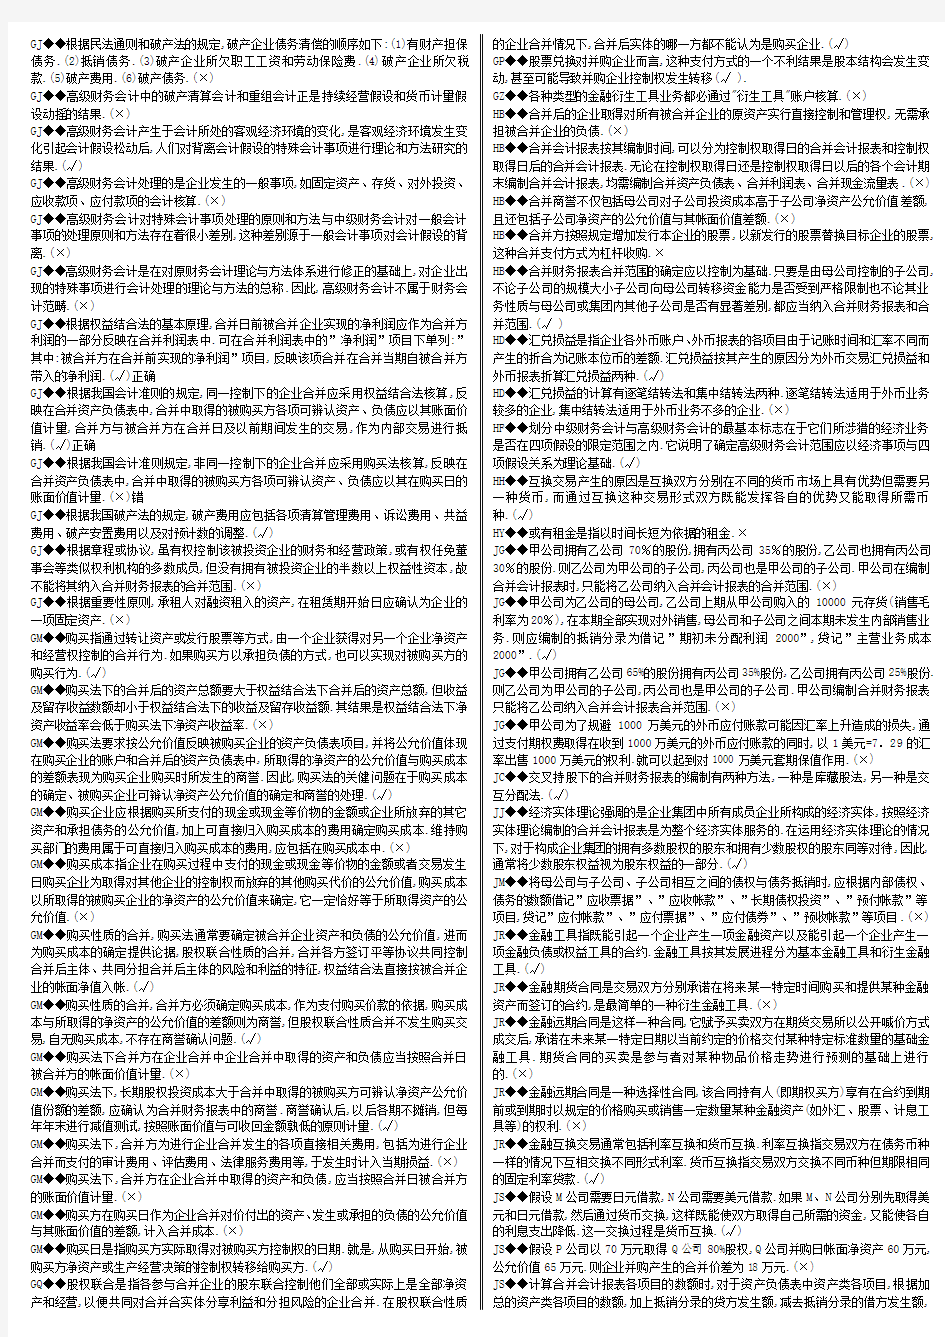 【2014】电大高级财务会计网考-判断题(全-精编版)全